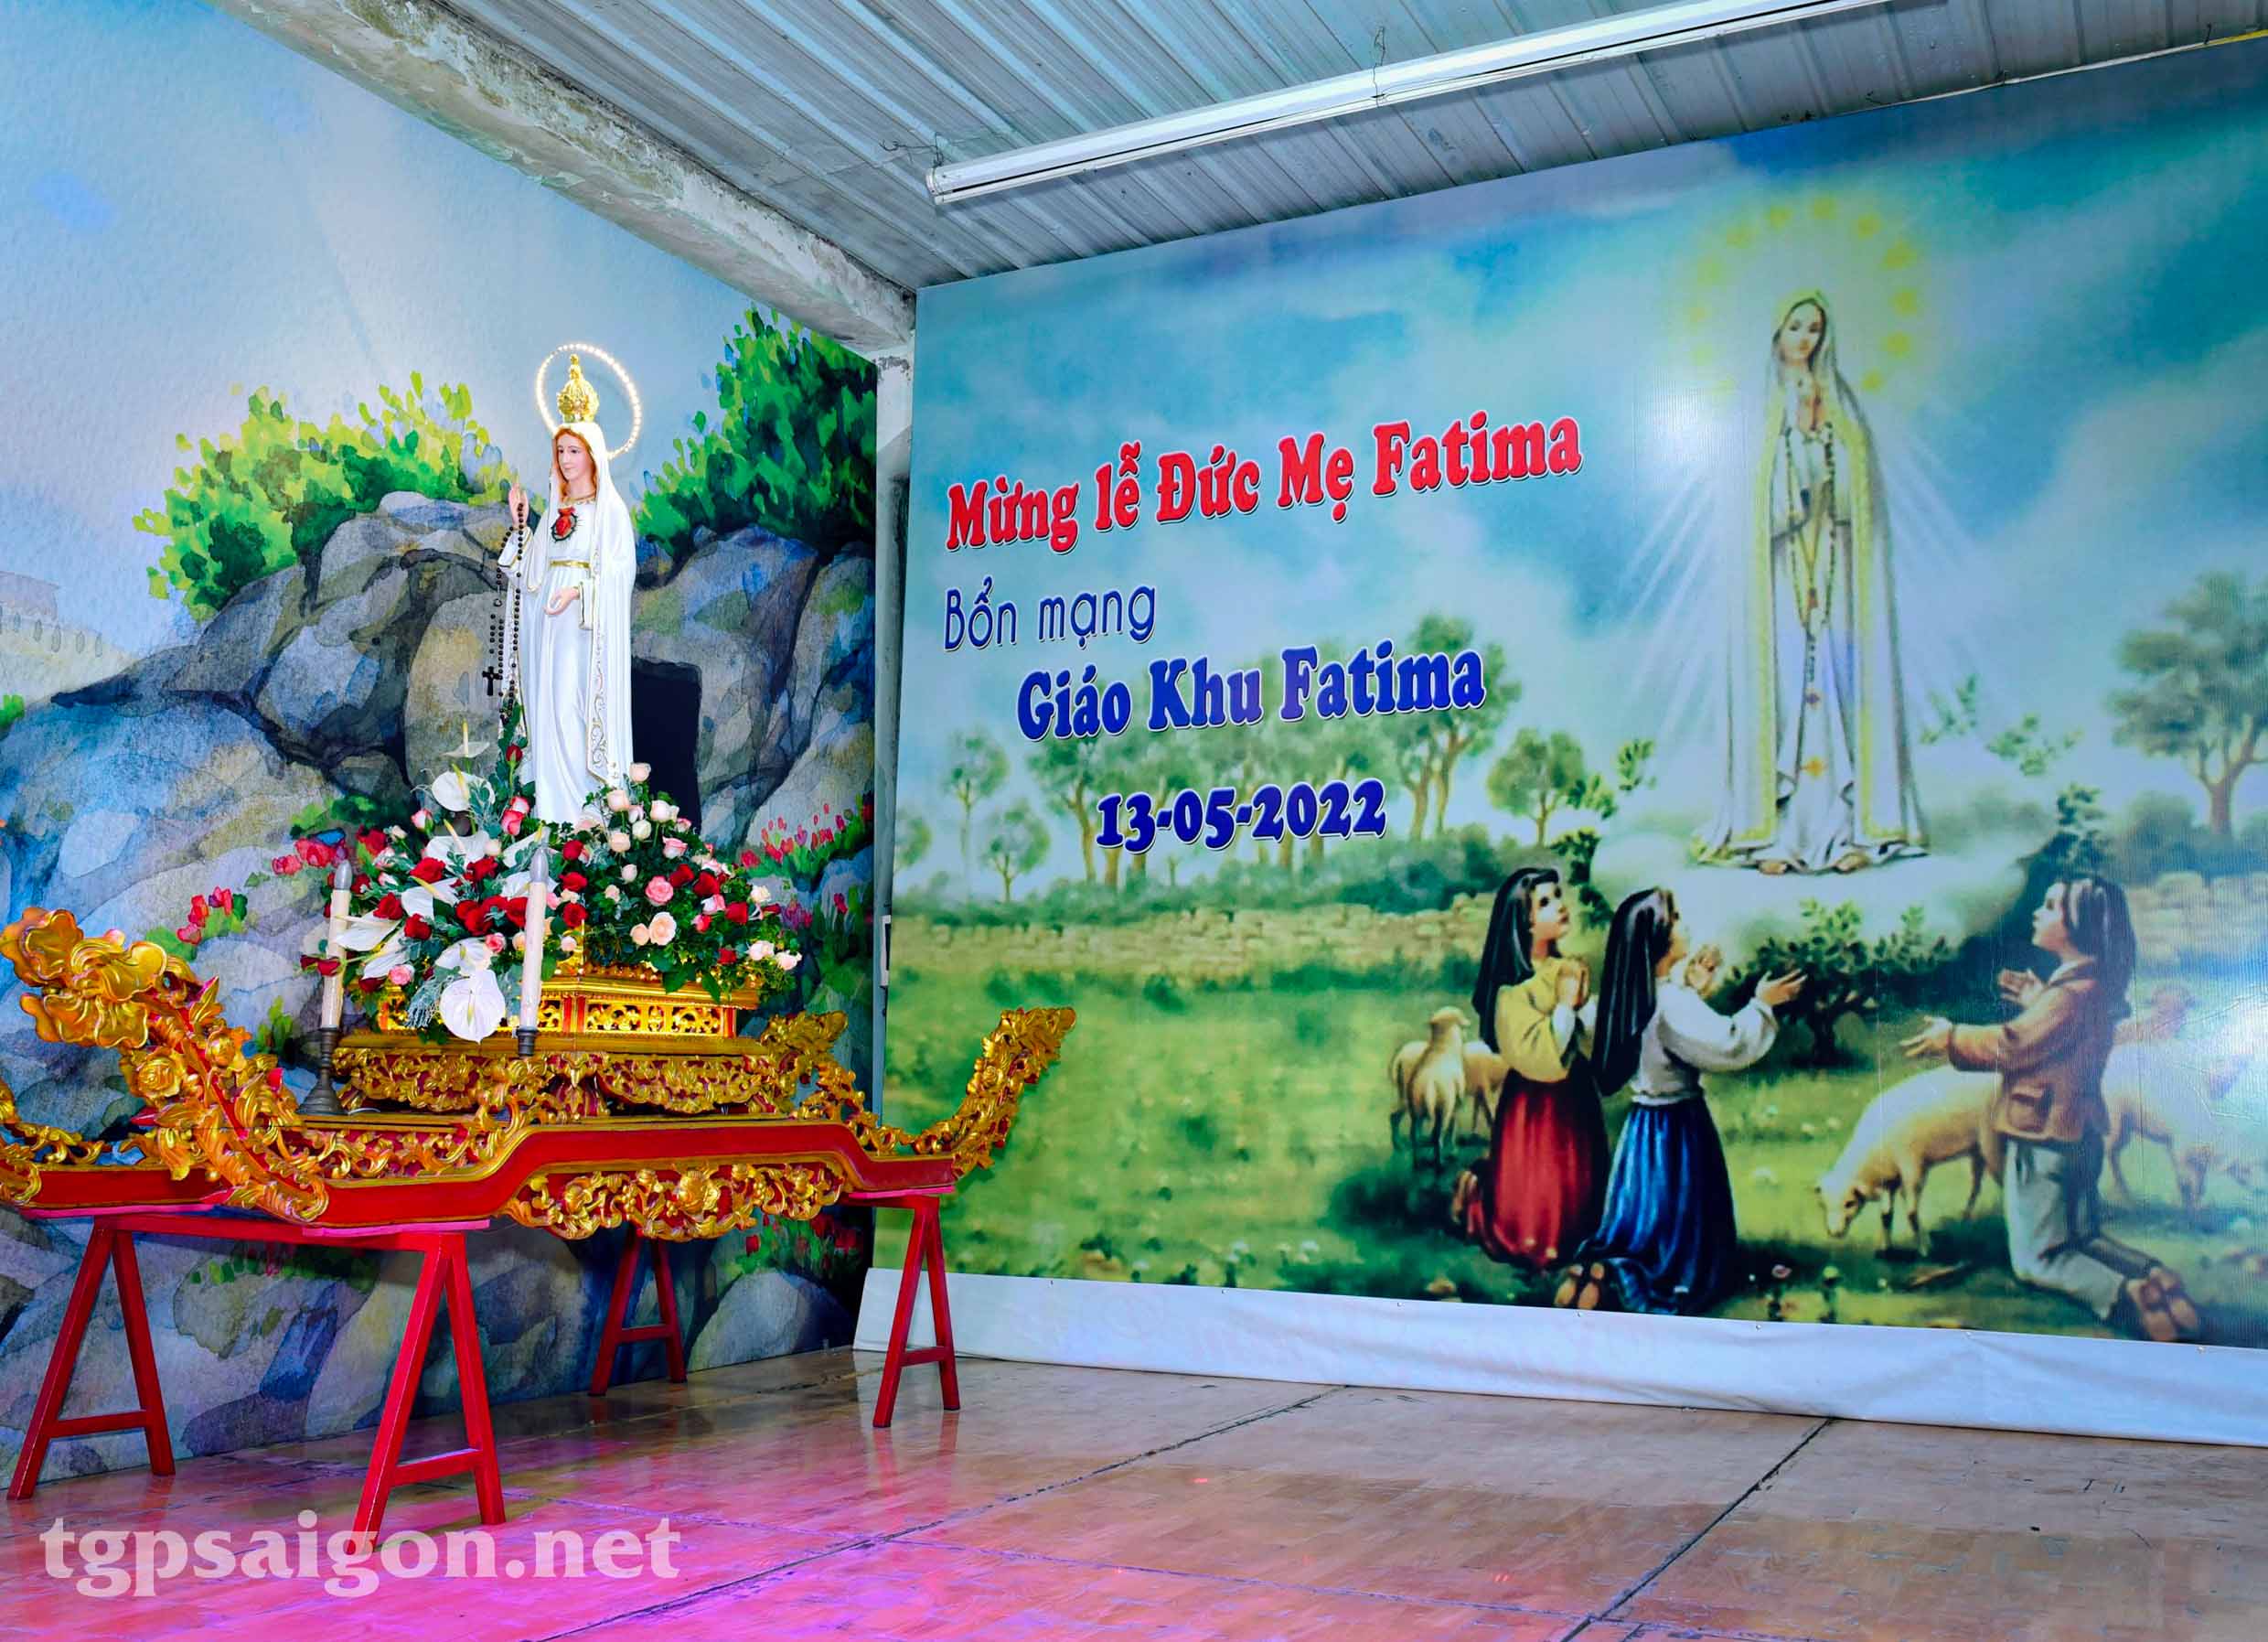 TGP.Sài Gòn - Giáo xứ Tân Phú Hòa: Giáo khu Fatima mừng bổn mạng 13-5-2022